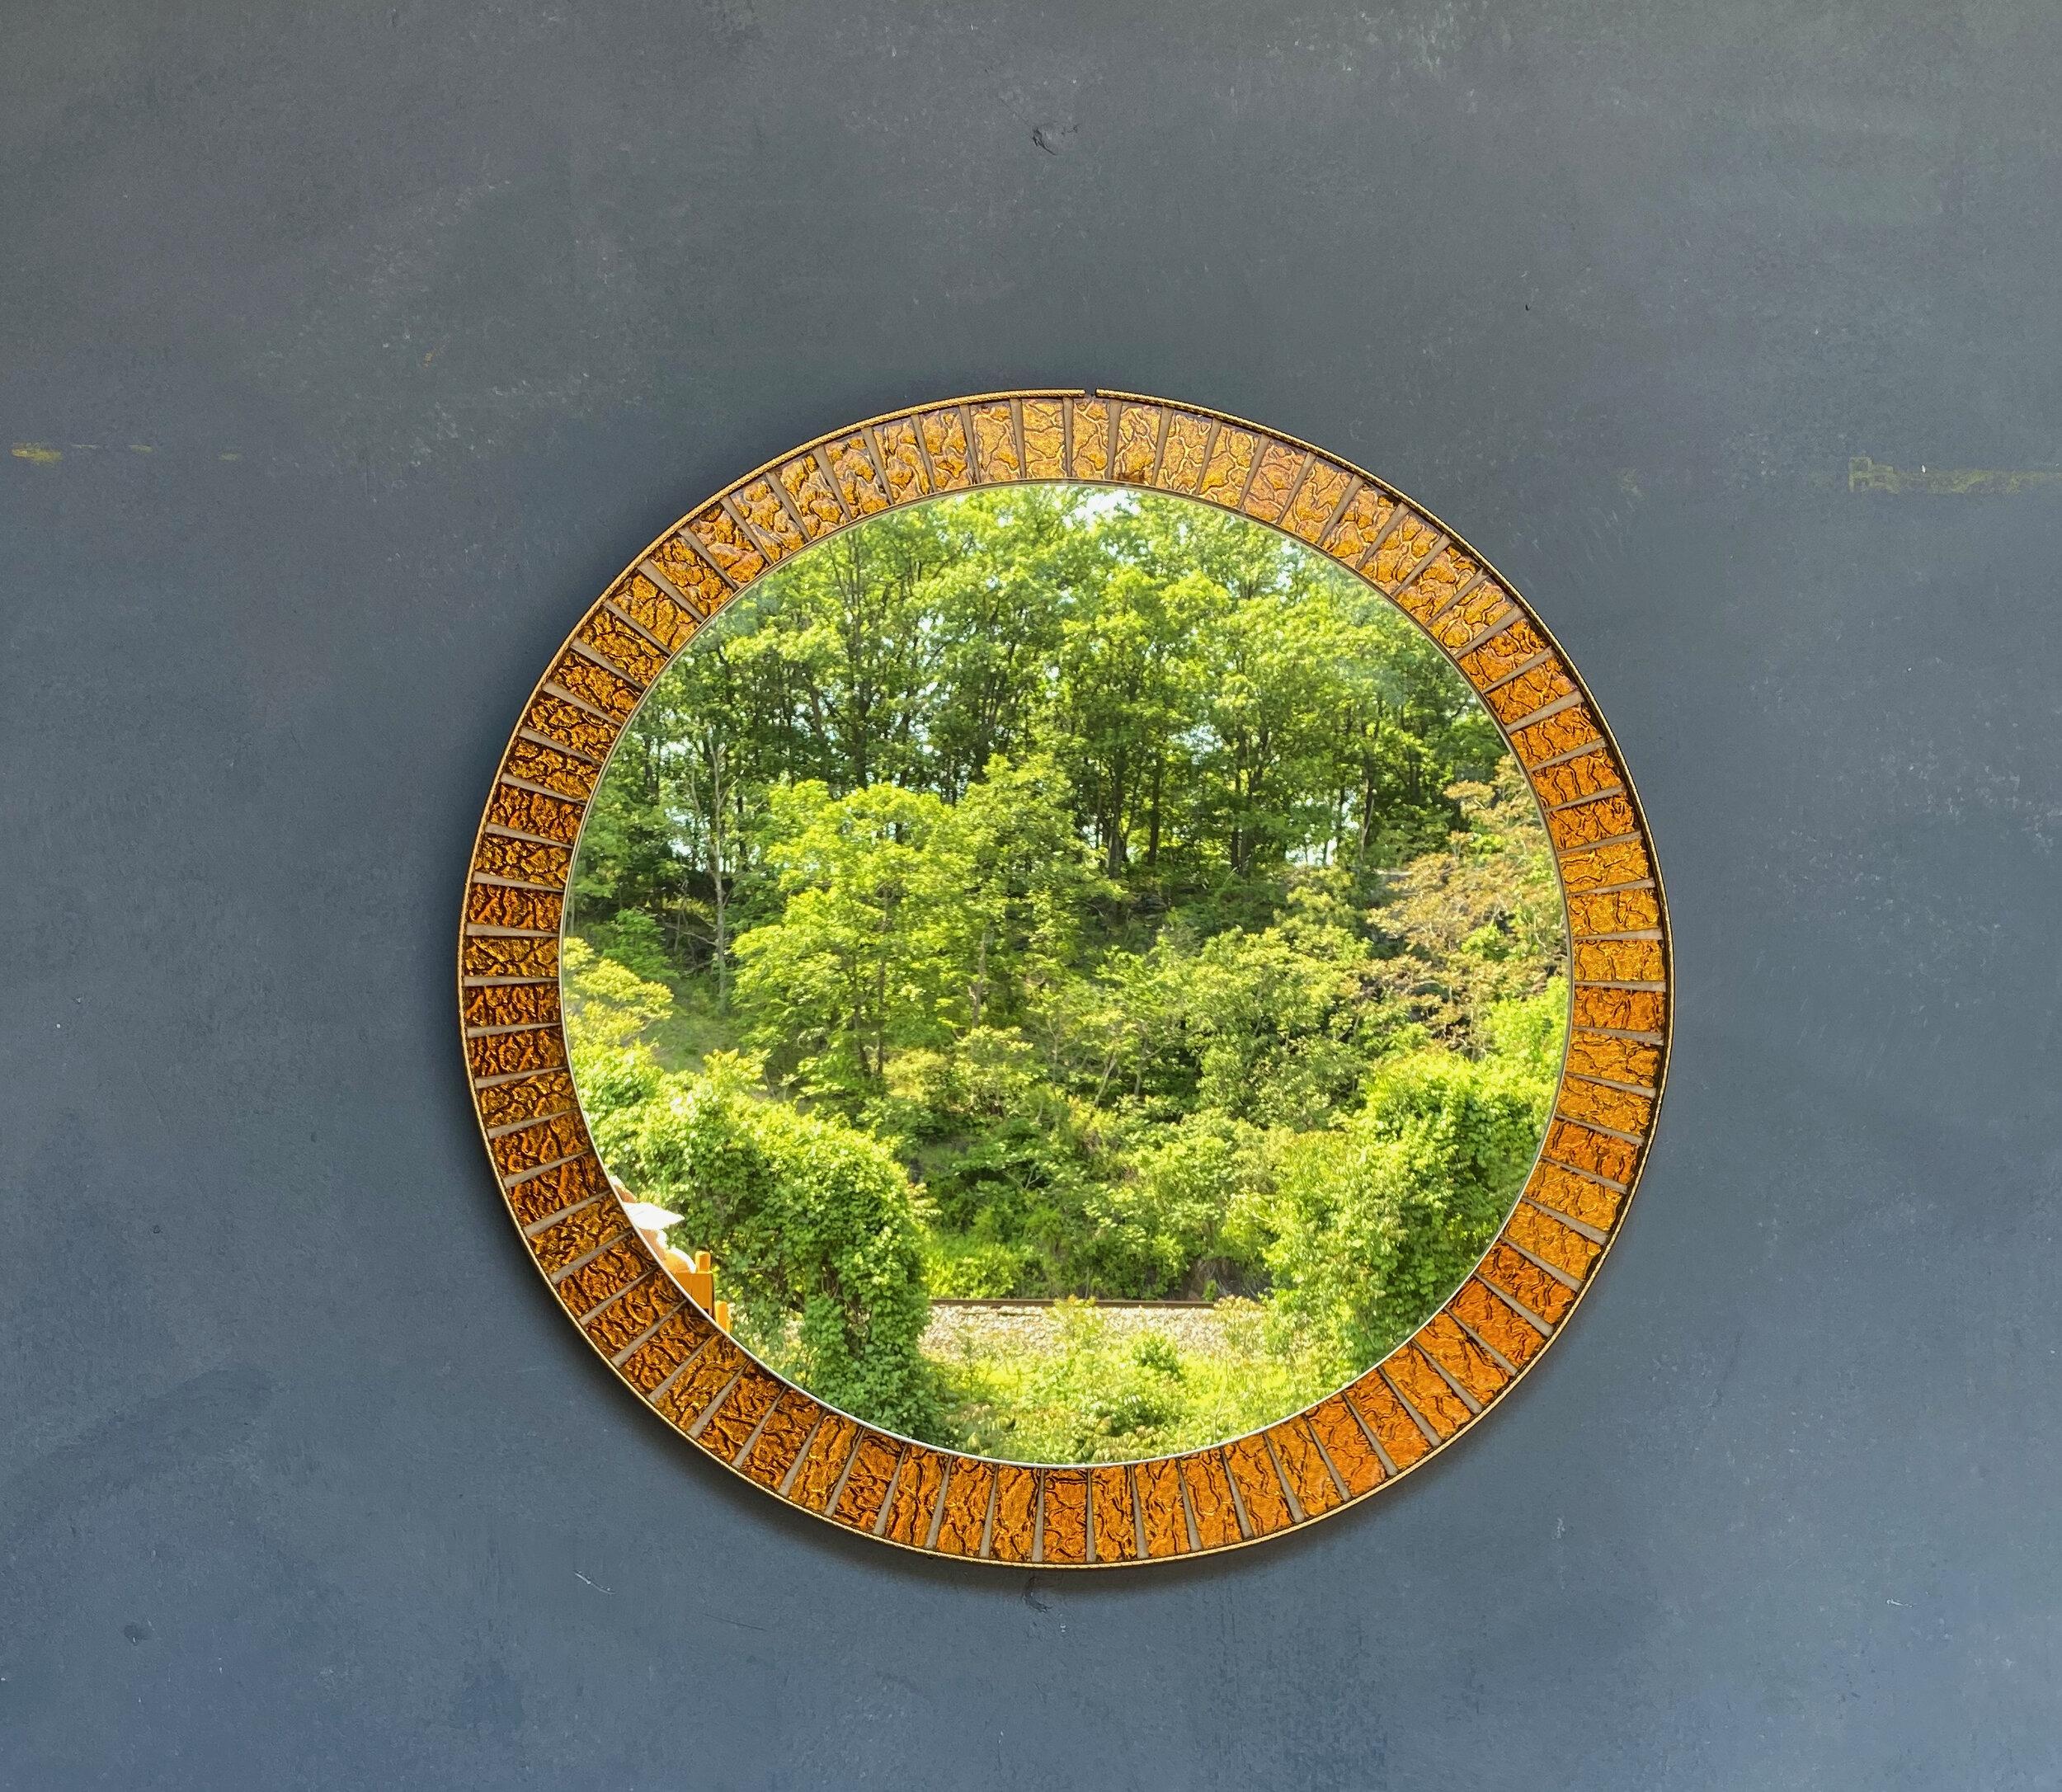 Dieser runde spanische Spiegel aus den 1960er Jahren hat einen Rahmen aus Messing, der abwechselnd goldfarbene Metallteile mit strahlenförmigen Trennwänden aus Messing umgibt.  In sehr gutem Vintage-Zustand und mit einem Durchmesser von 23 Zoll ist